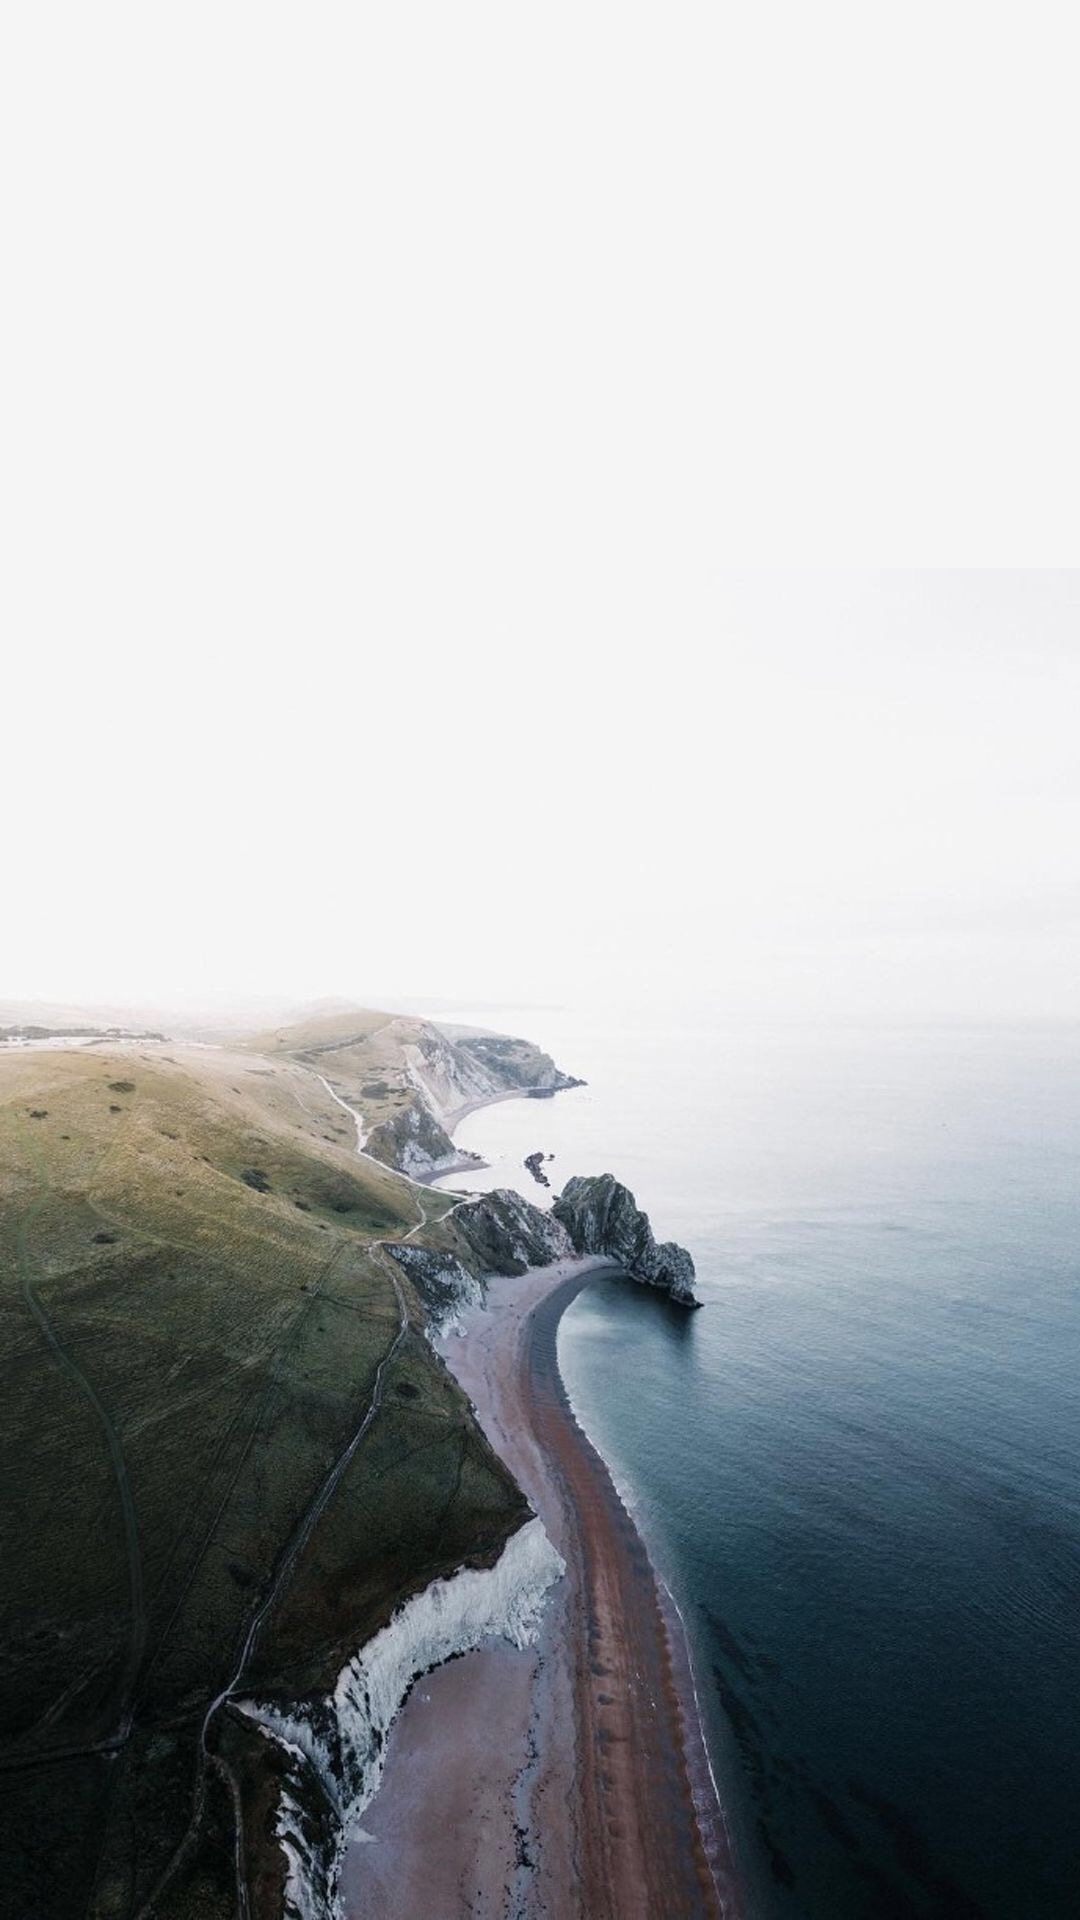 海峡图片 最美英吉利海峡多佛白崖风景图片